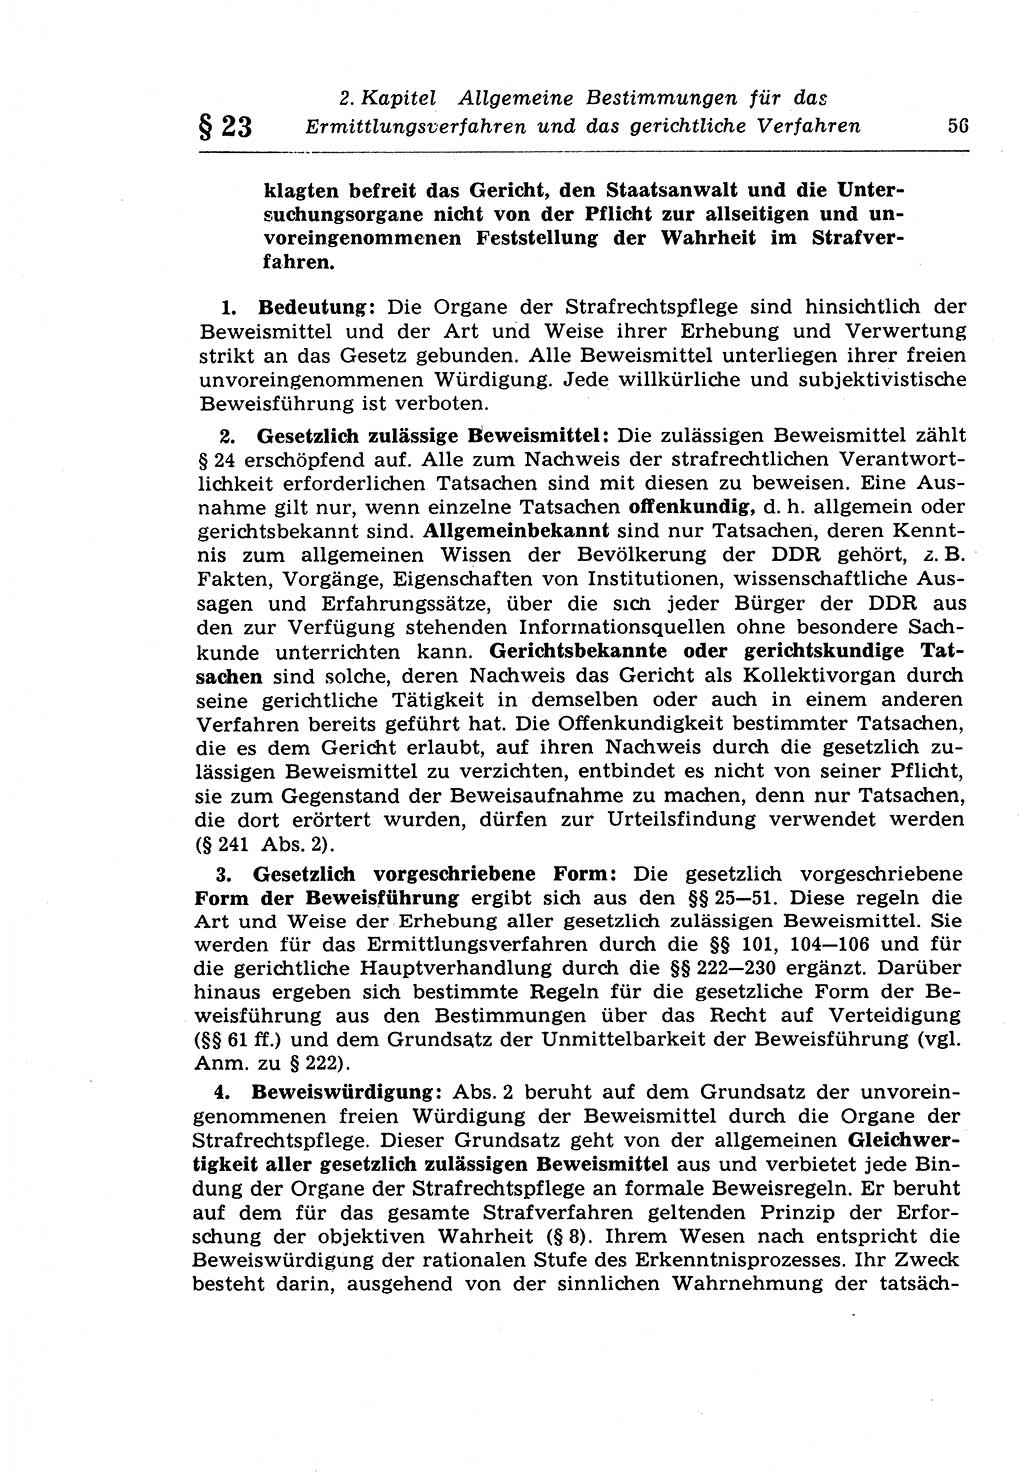 Strafprozeßrecht der DDR (Deutsche Demokratische Republik), Lehrkommentar zur Strafprozeßordnung (StPO) 1968, Seite 56 (Strafprozeßr. DDR Lehrkomm. StPO 19688, S. 56)